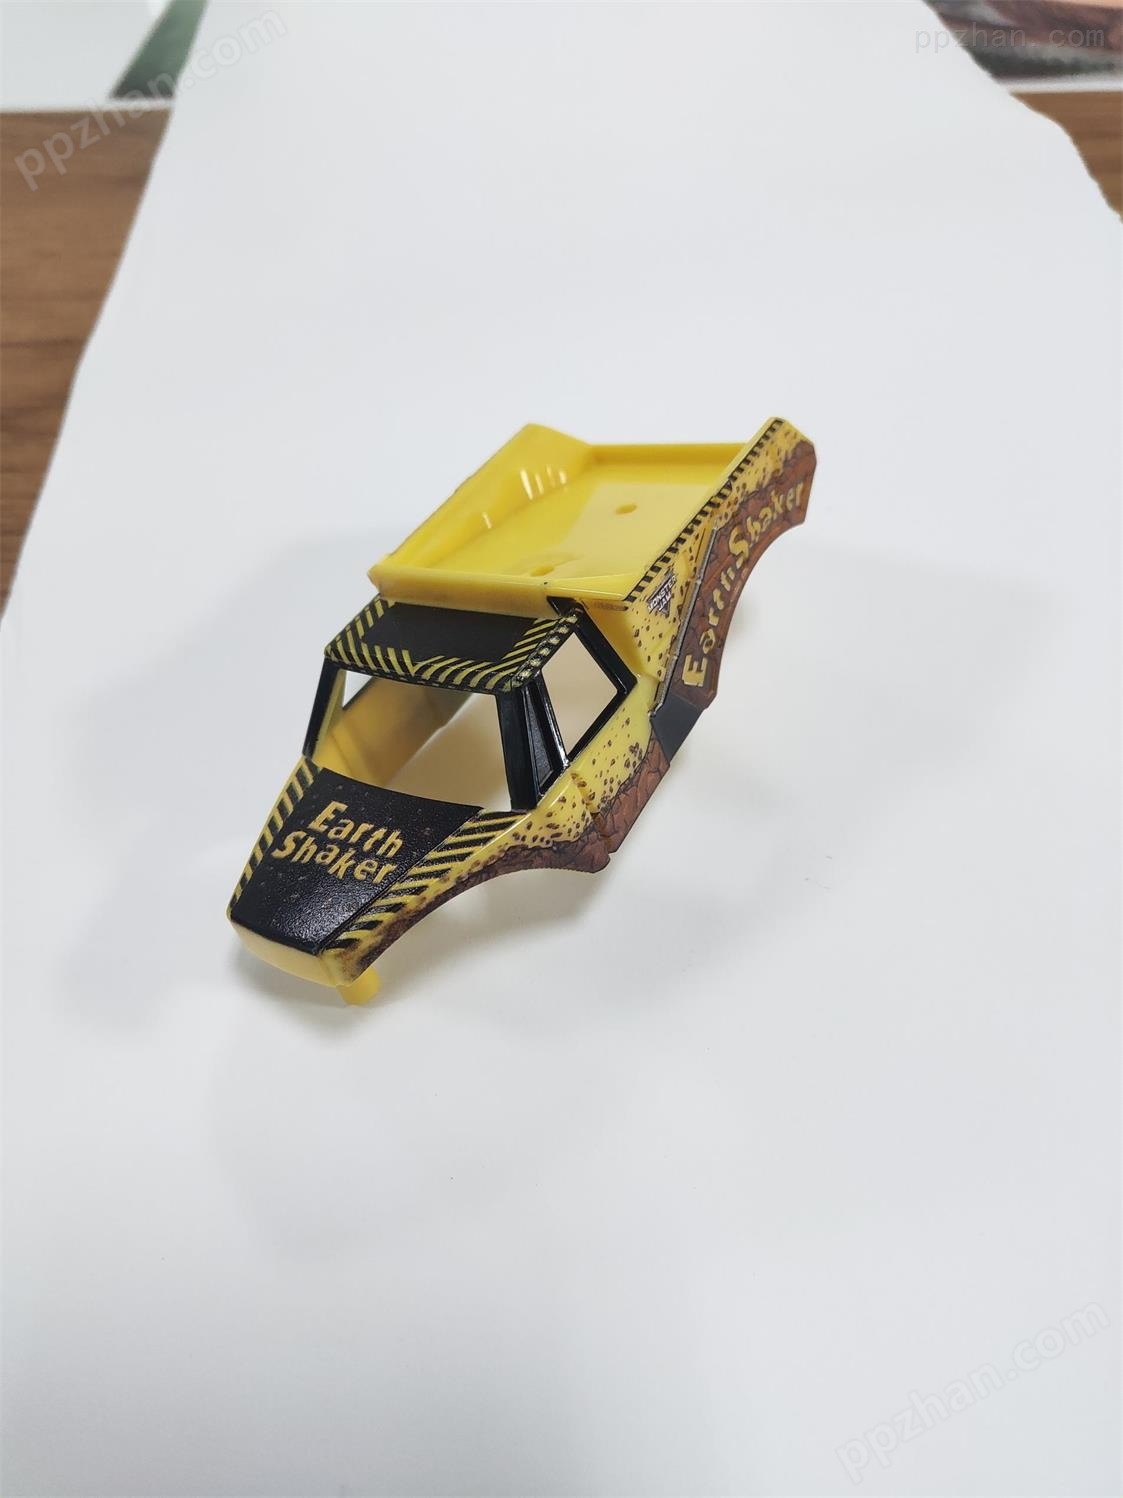 儿童玩具车 金属汽车模型UV打印机